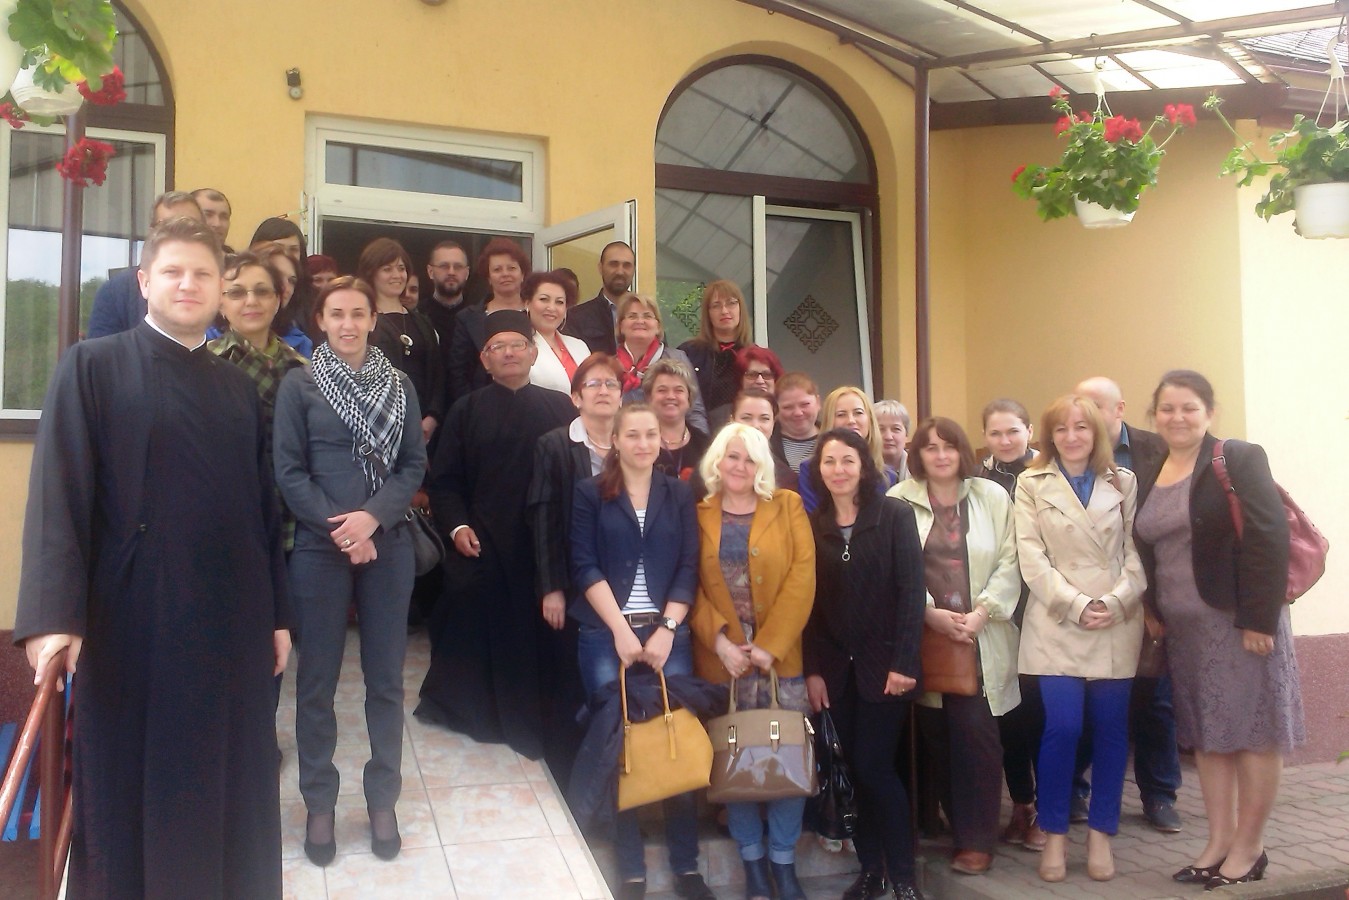 Proiectele sociale ale Bisericii în Bistrița-Năsăud, prezentate la Centrul „Sfântul Nicolae” din Mociu